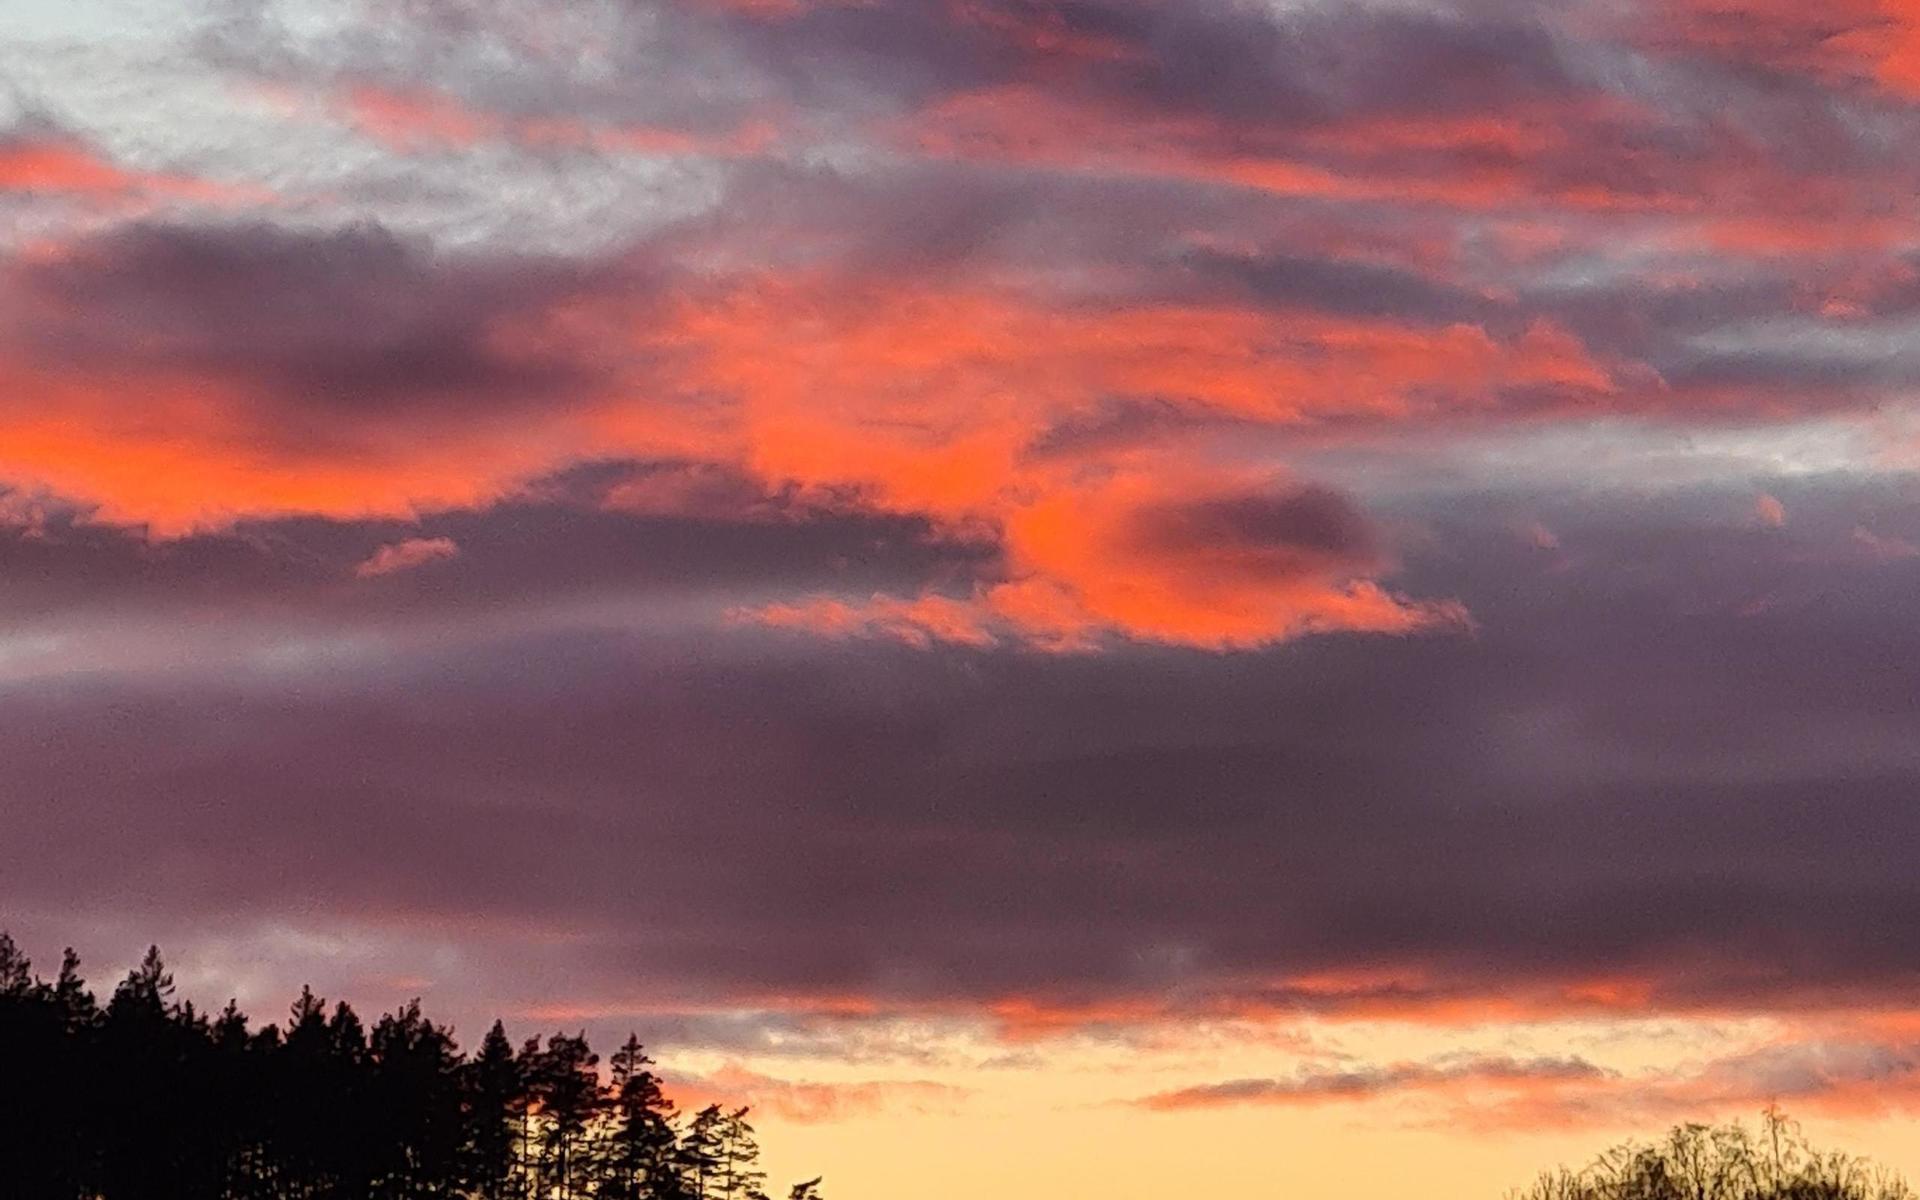 ”En vacker solnedgång över Uddevalla!”